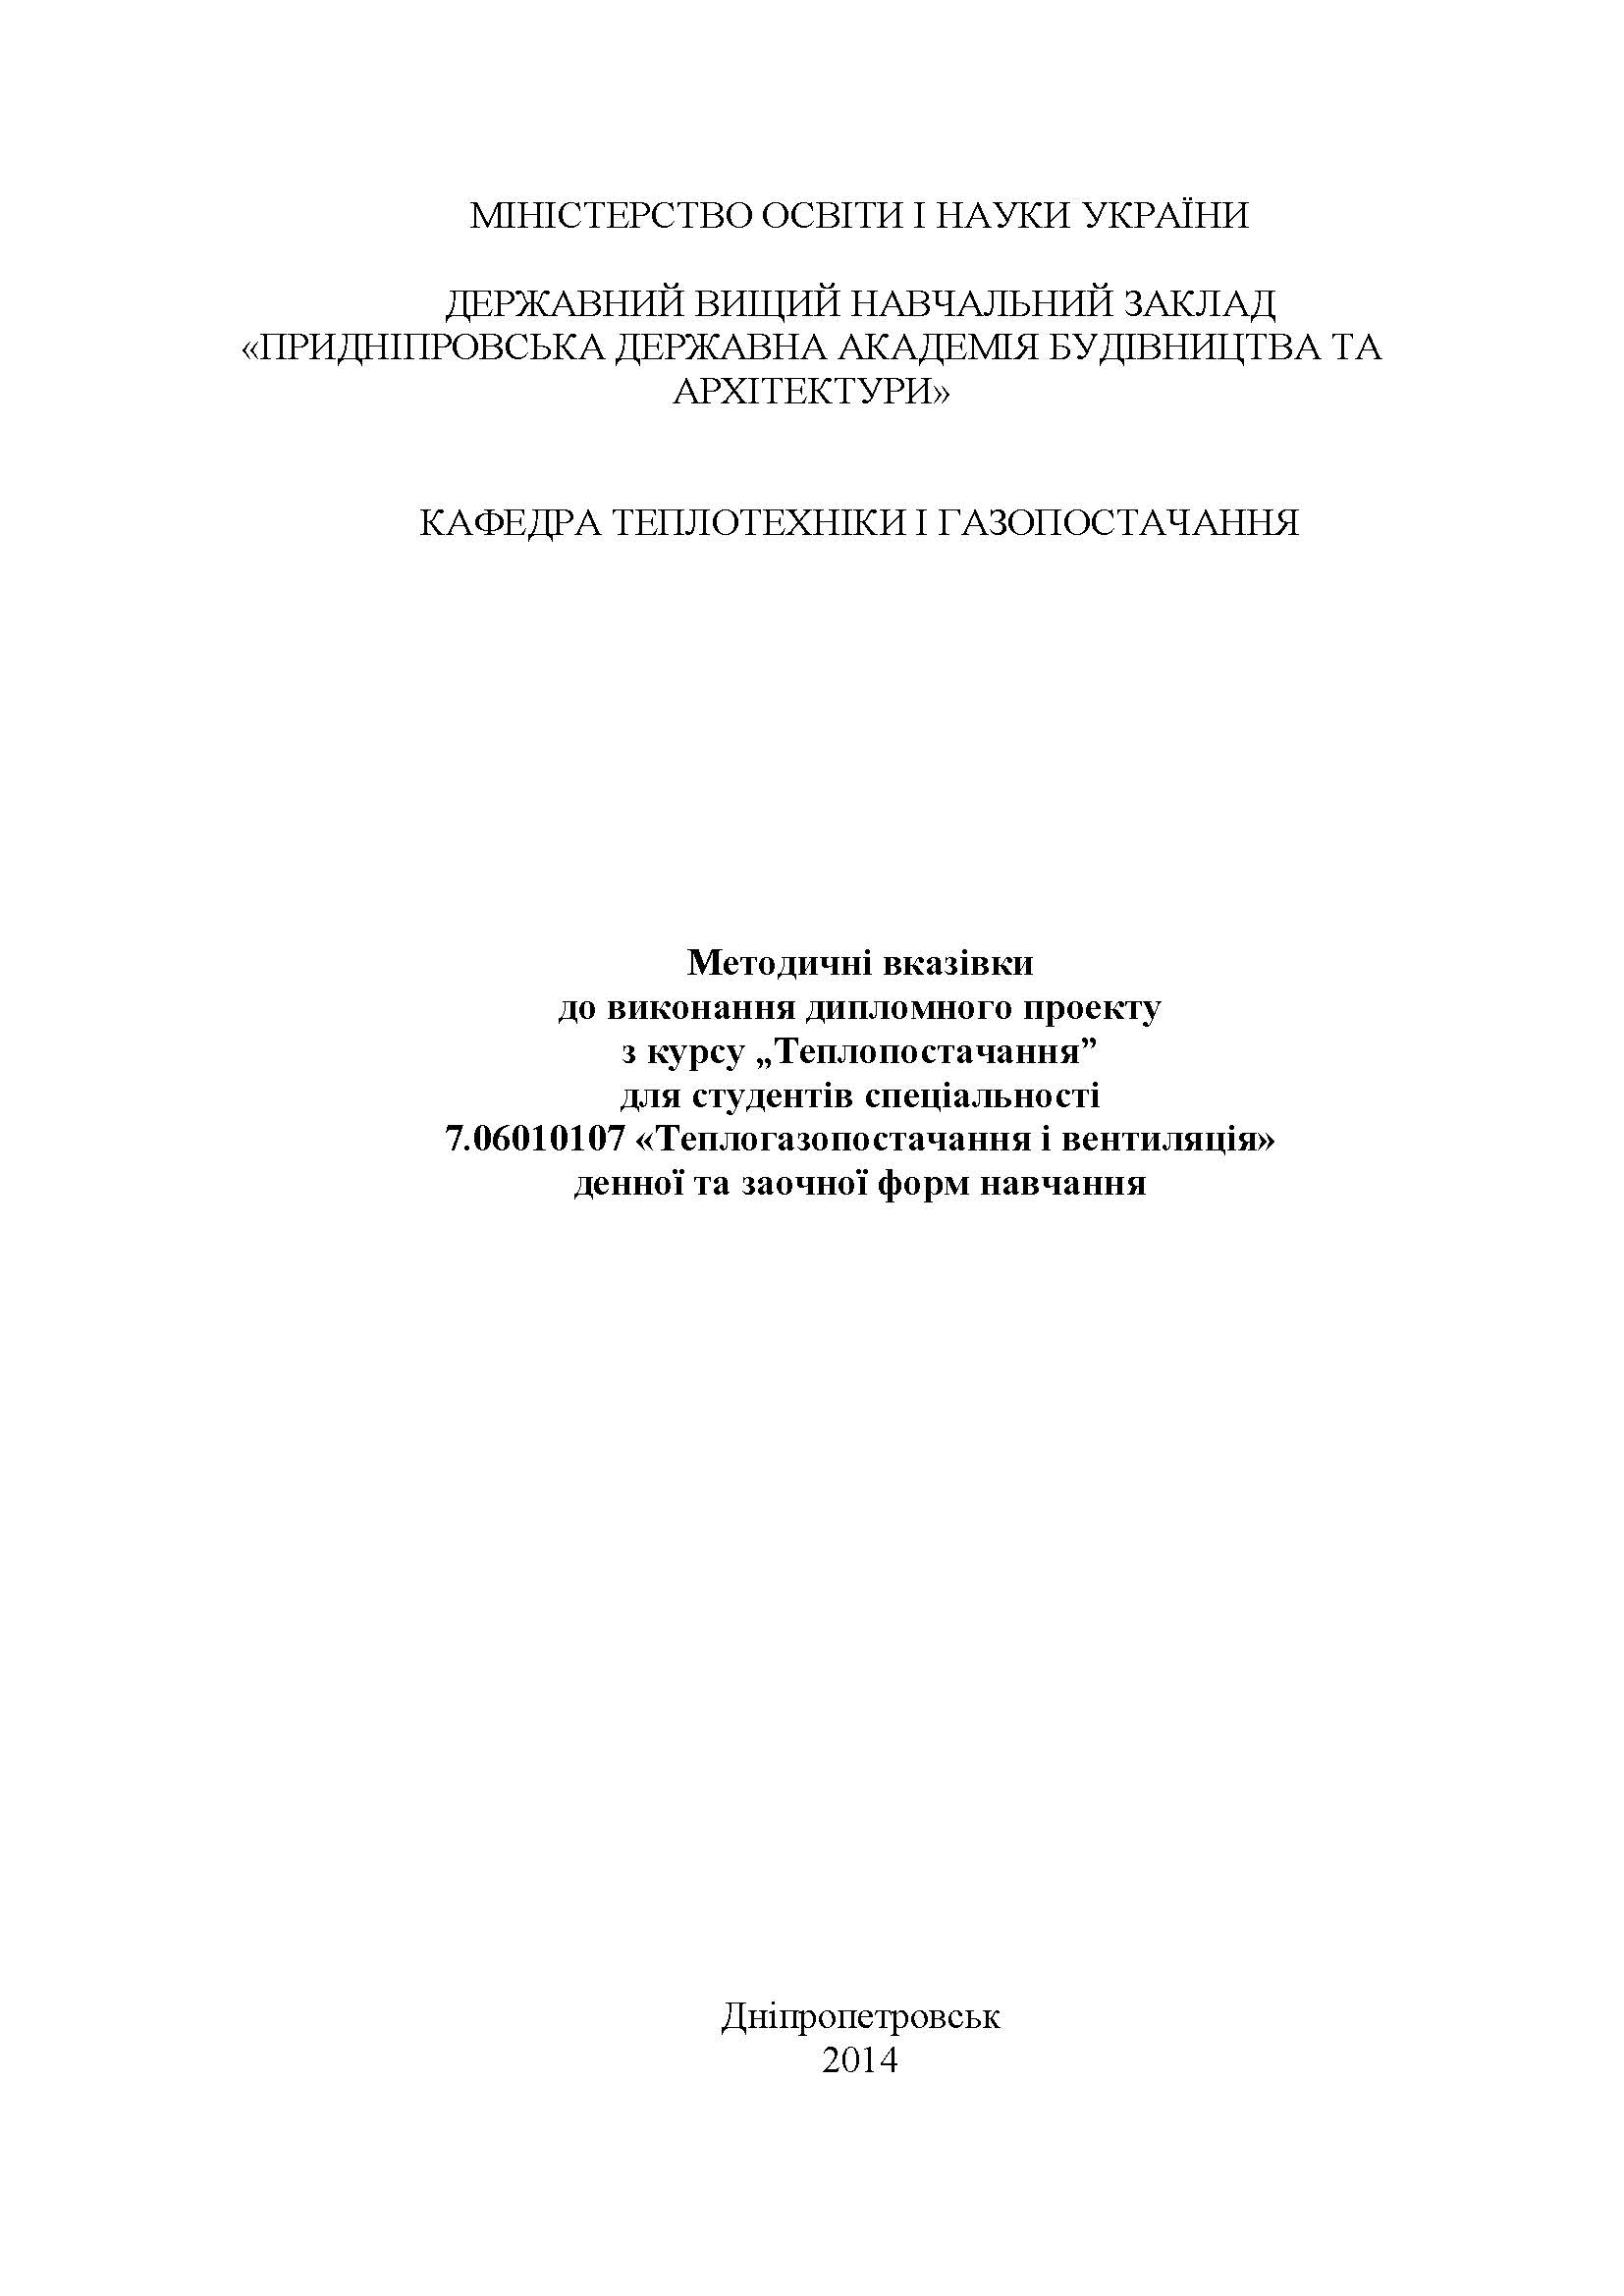 Методичні вказівки до виконання дипломного проекту з курсу «Теплопостачання», 2014